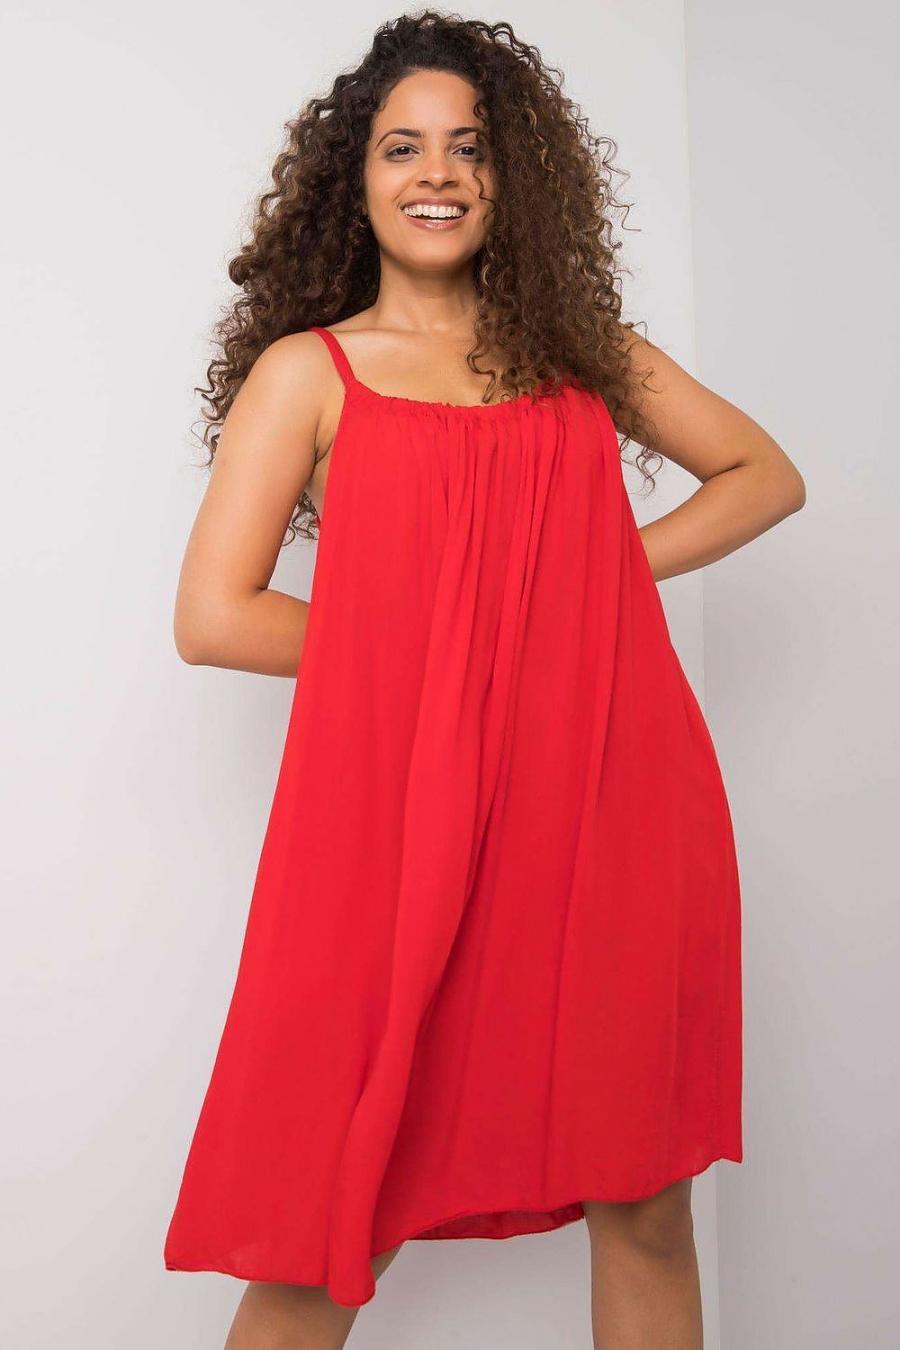 Ostatní značky šaty dámské 165036 - červená - velikost S